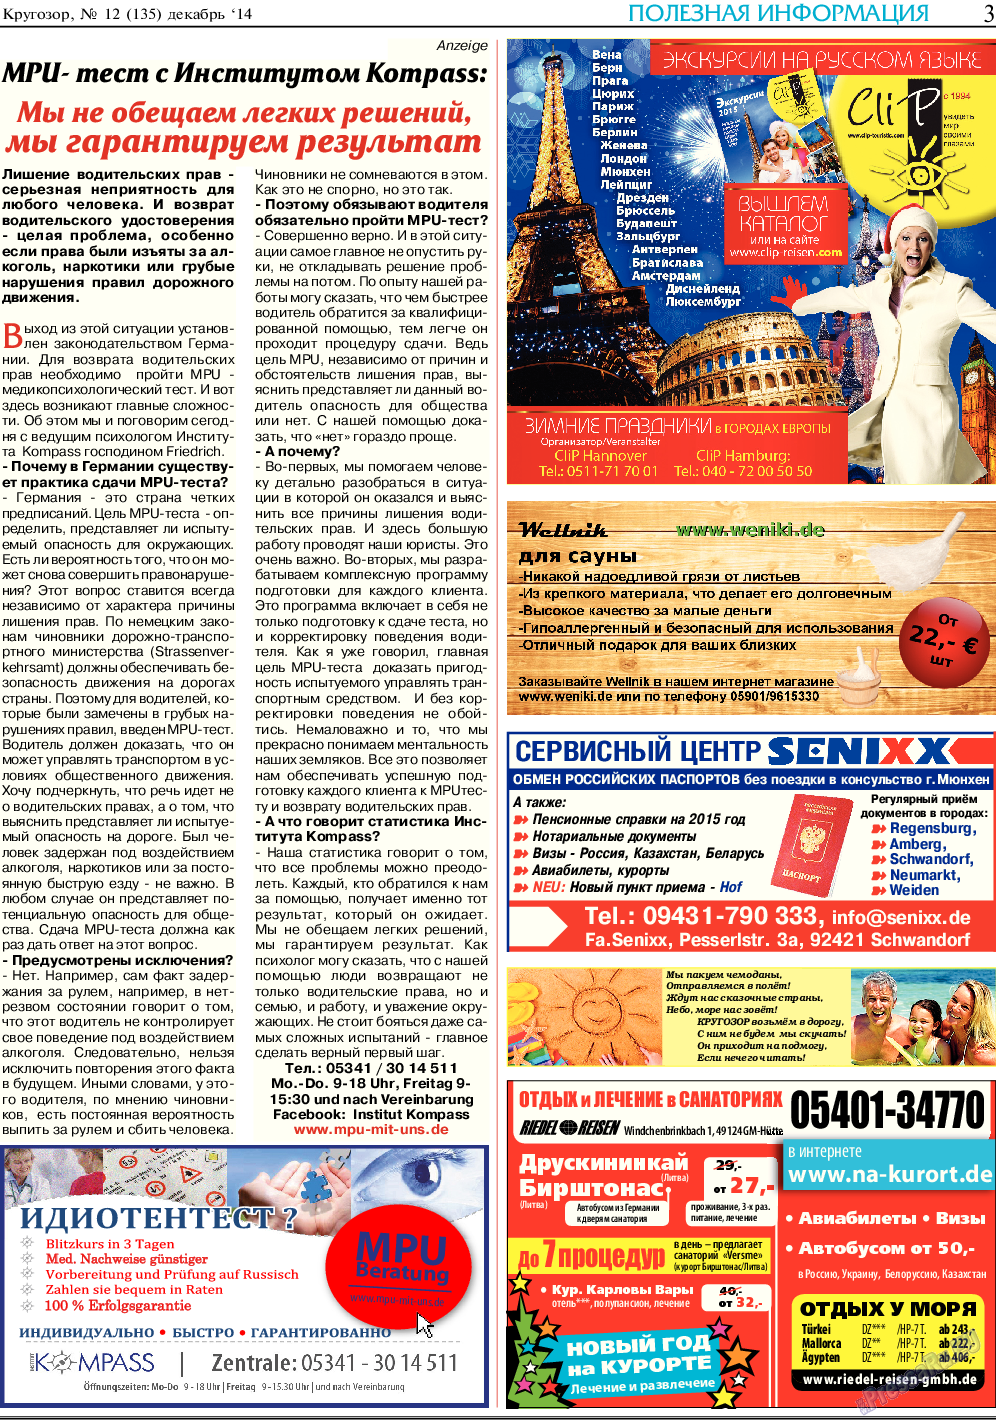 Кругозор, газета. 2014 №12 стр.3